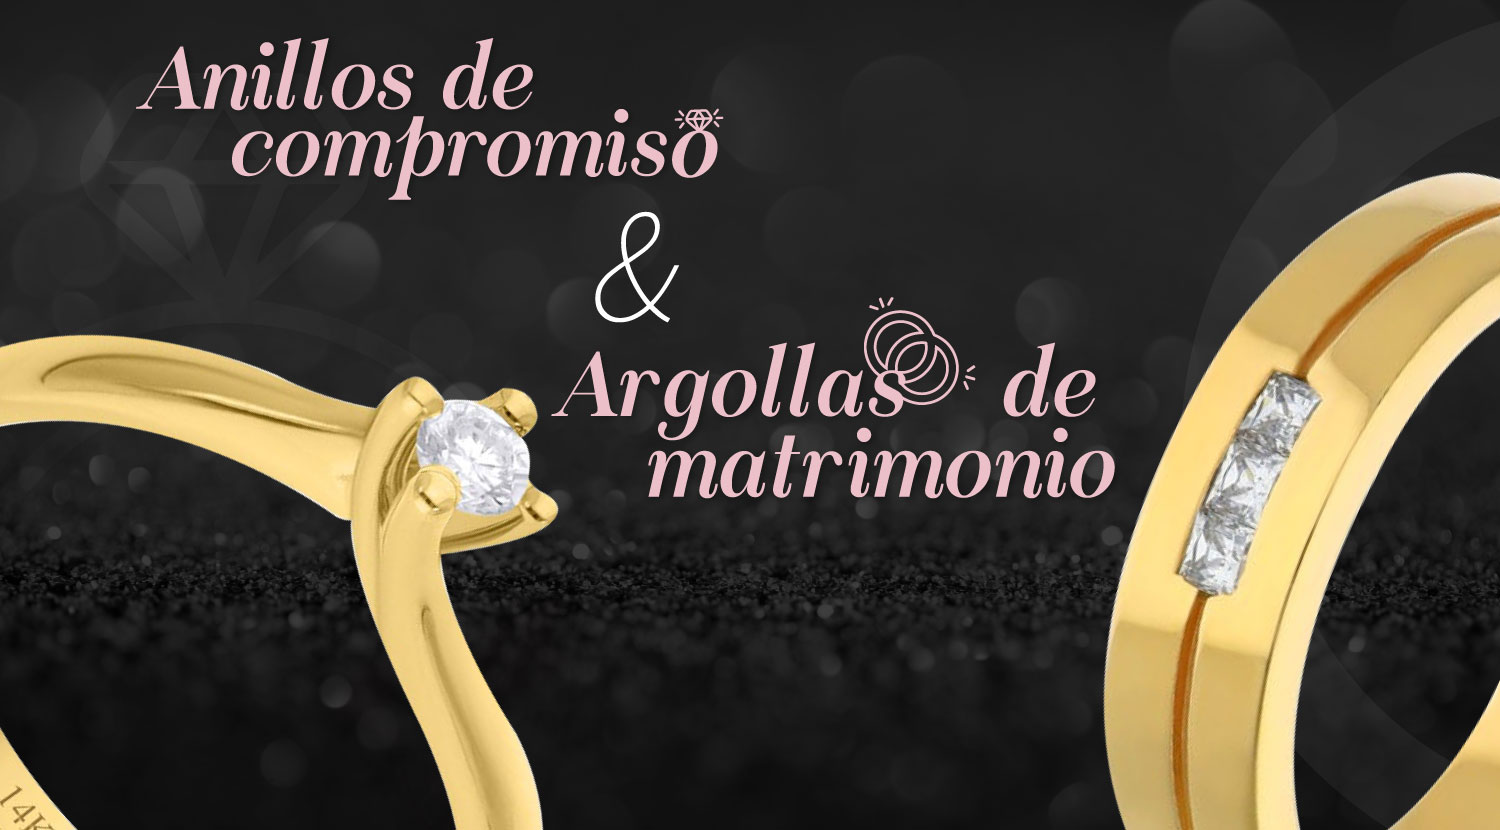 anillos de compromiso, argollas, diferencias, anillos de boda, boda, anillos  